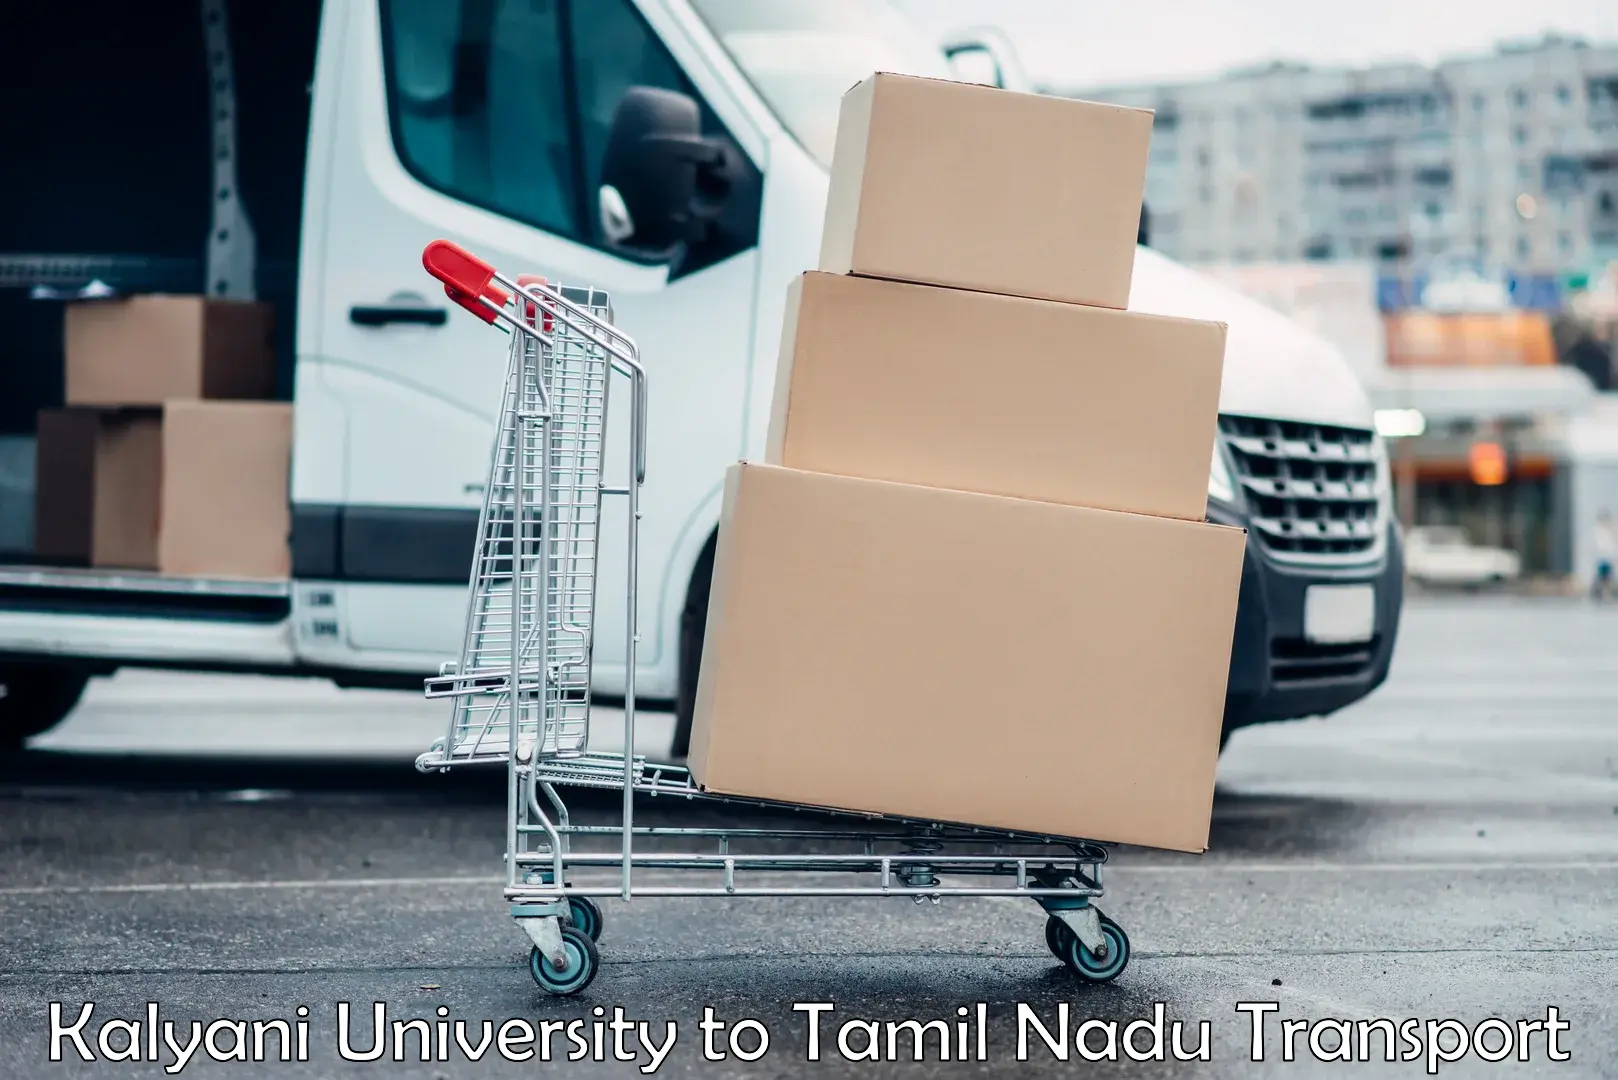 Furniture transport service in Kalyani University to Kudankulam